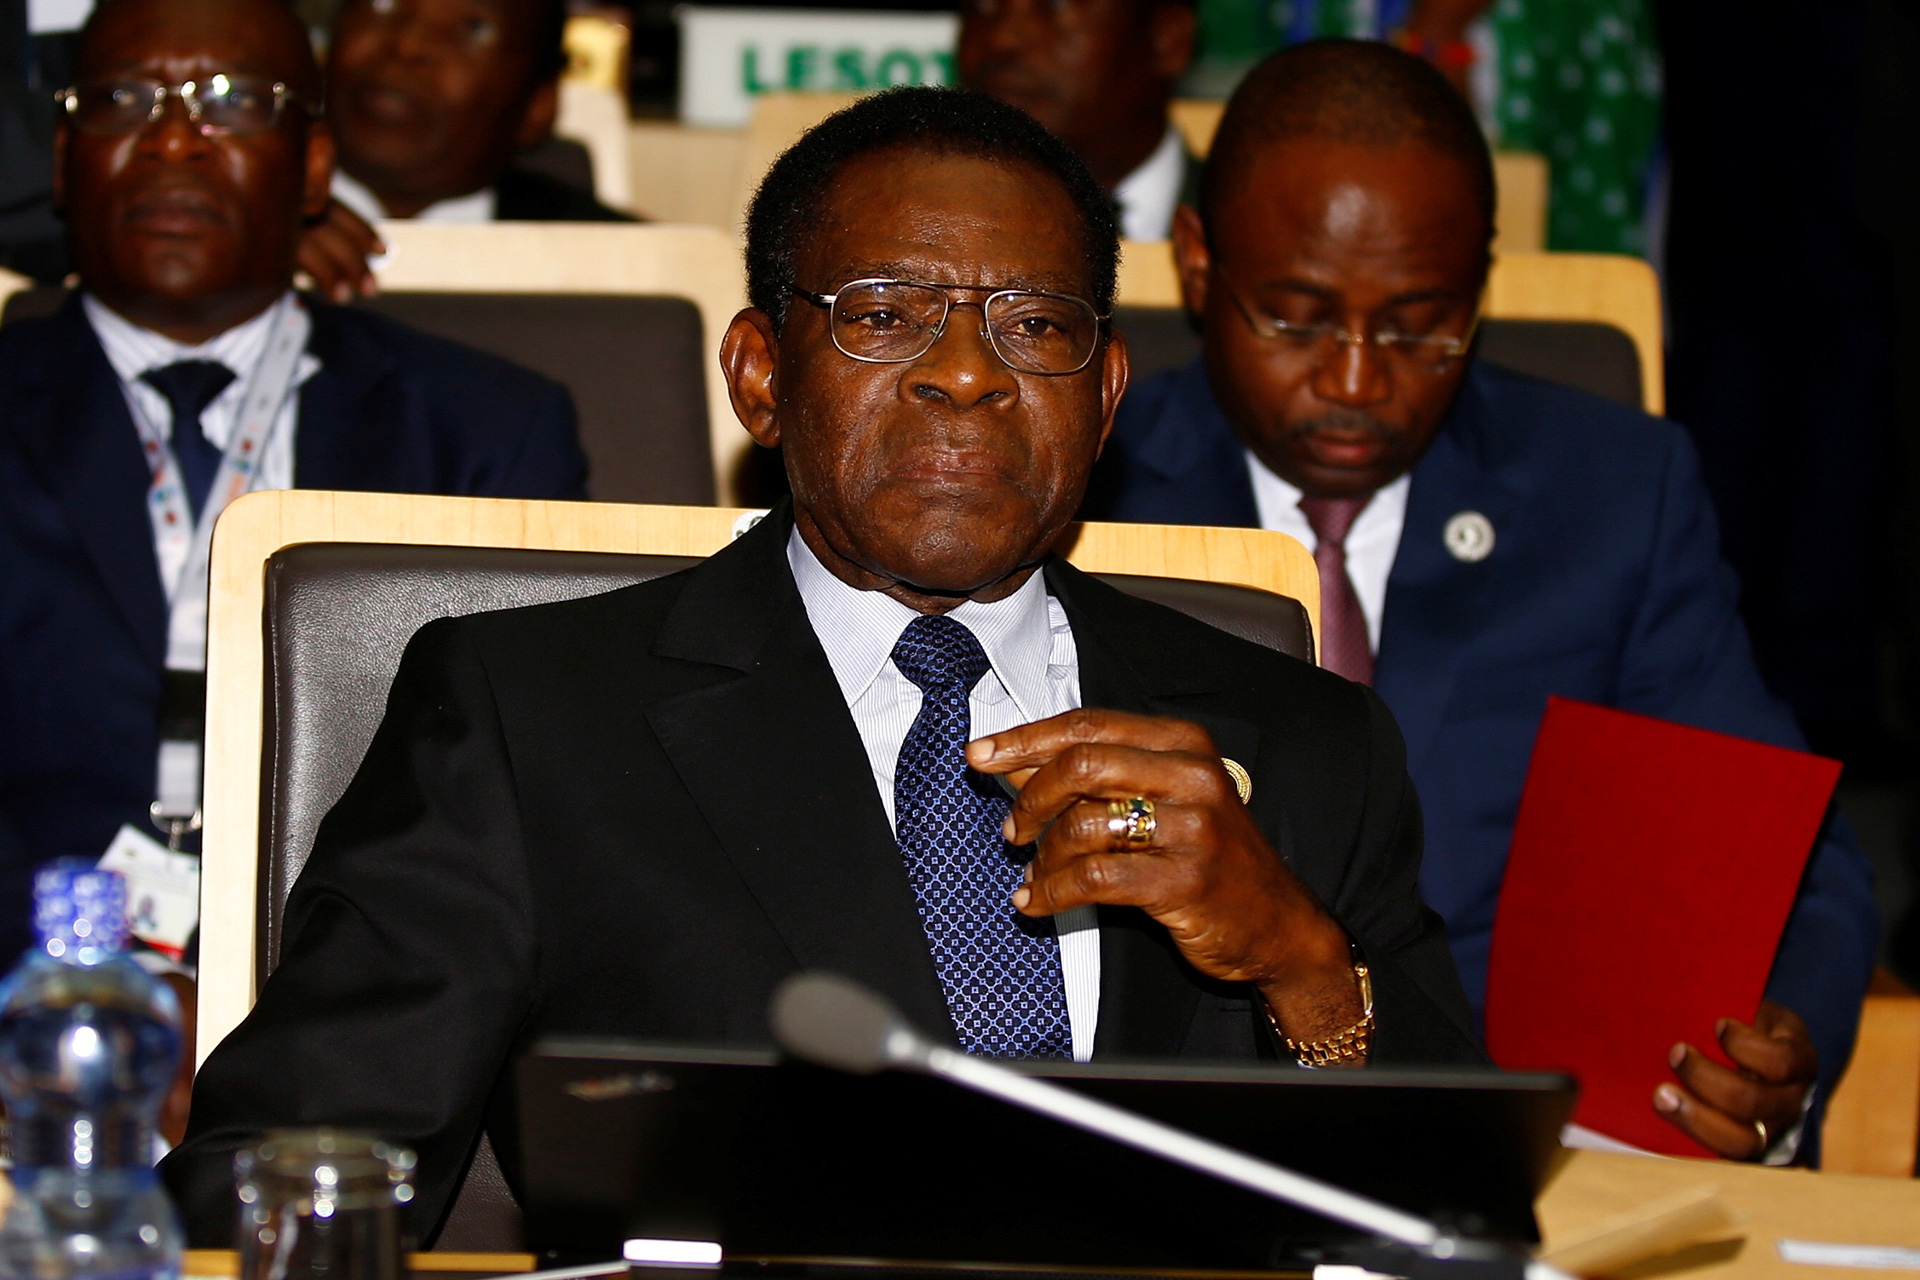 Un juez ordena embargar un avión de Obiang en Barajas